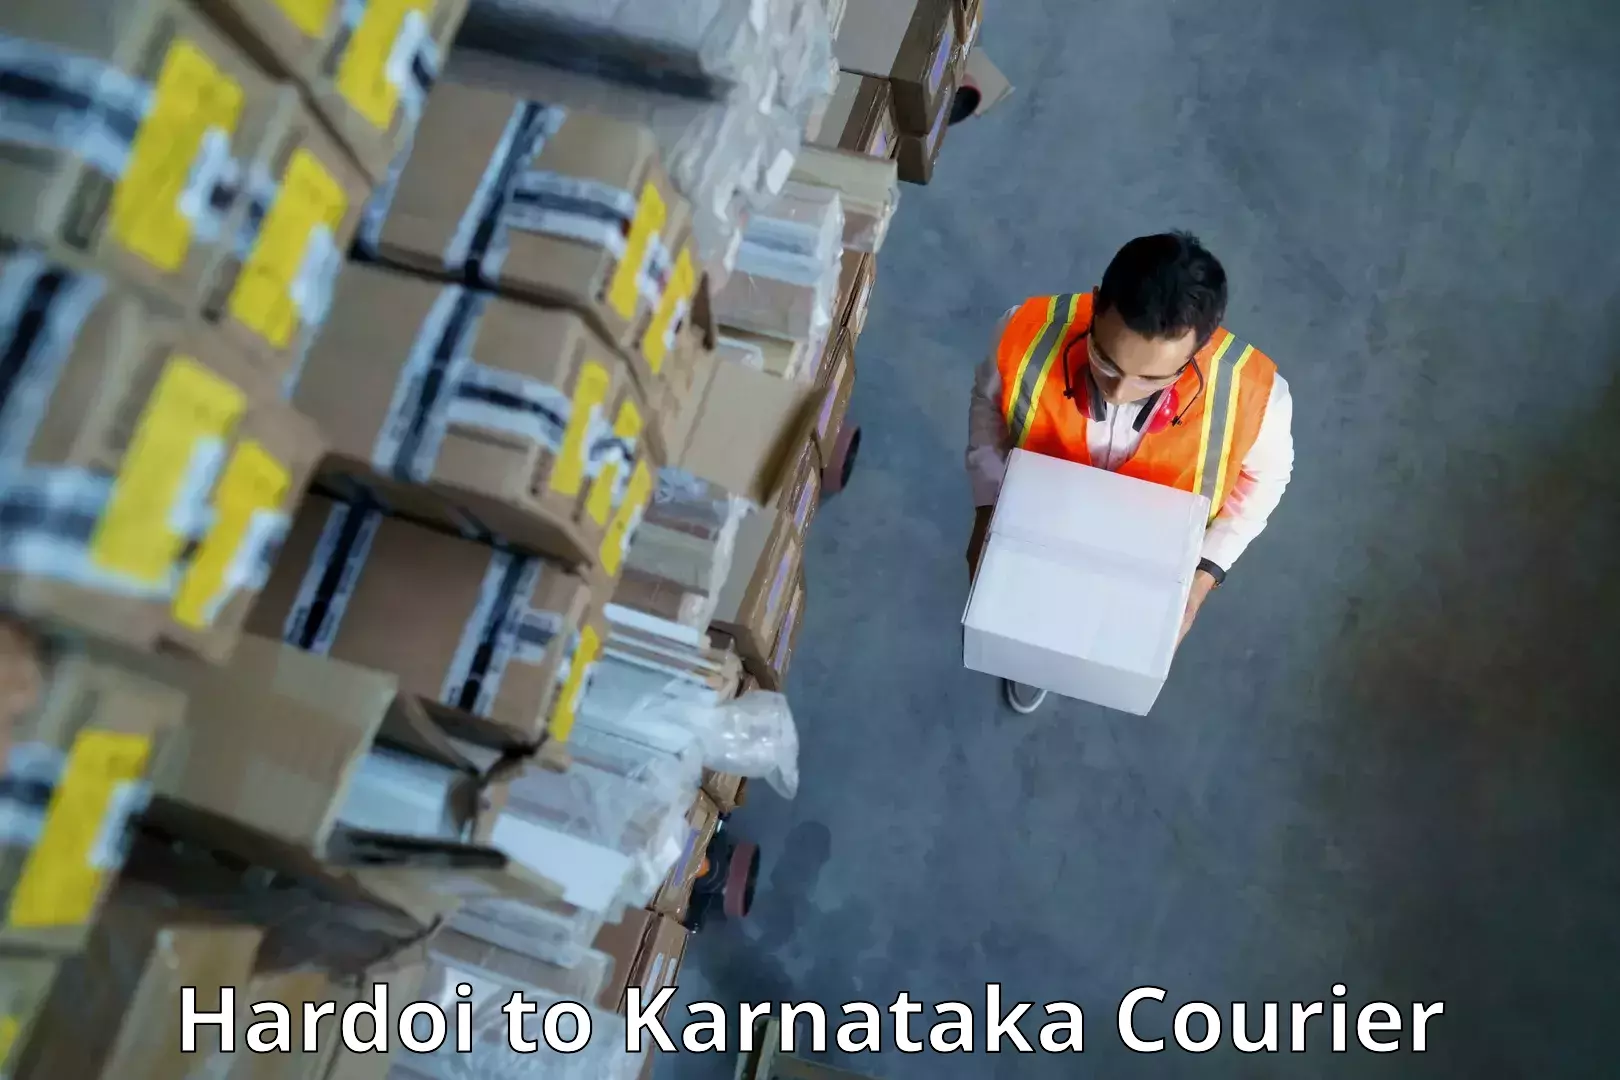 Customized delivery options Hardoi to Kanjarakatte